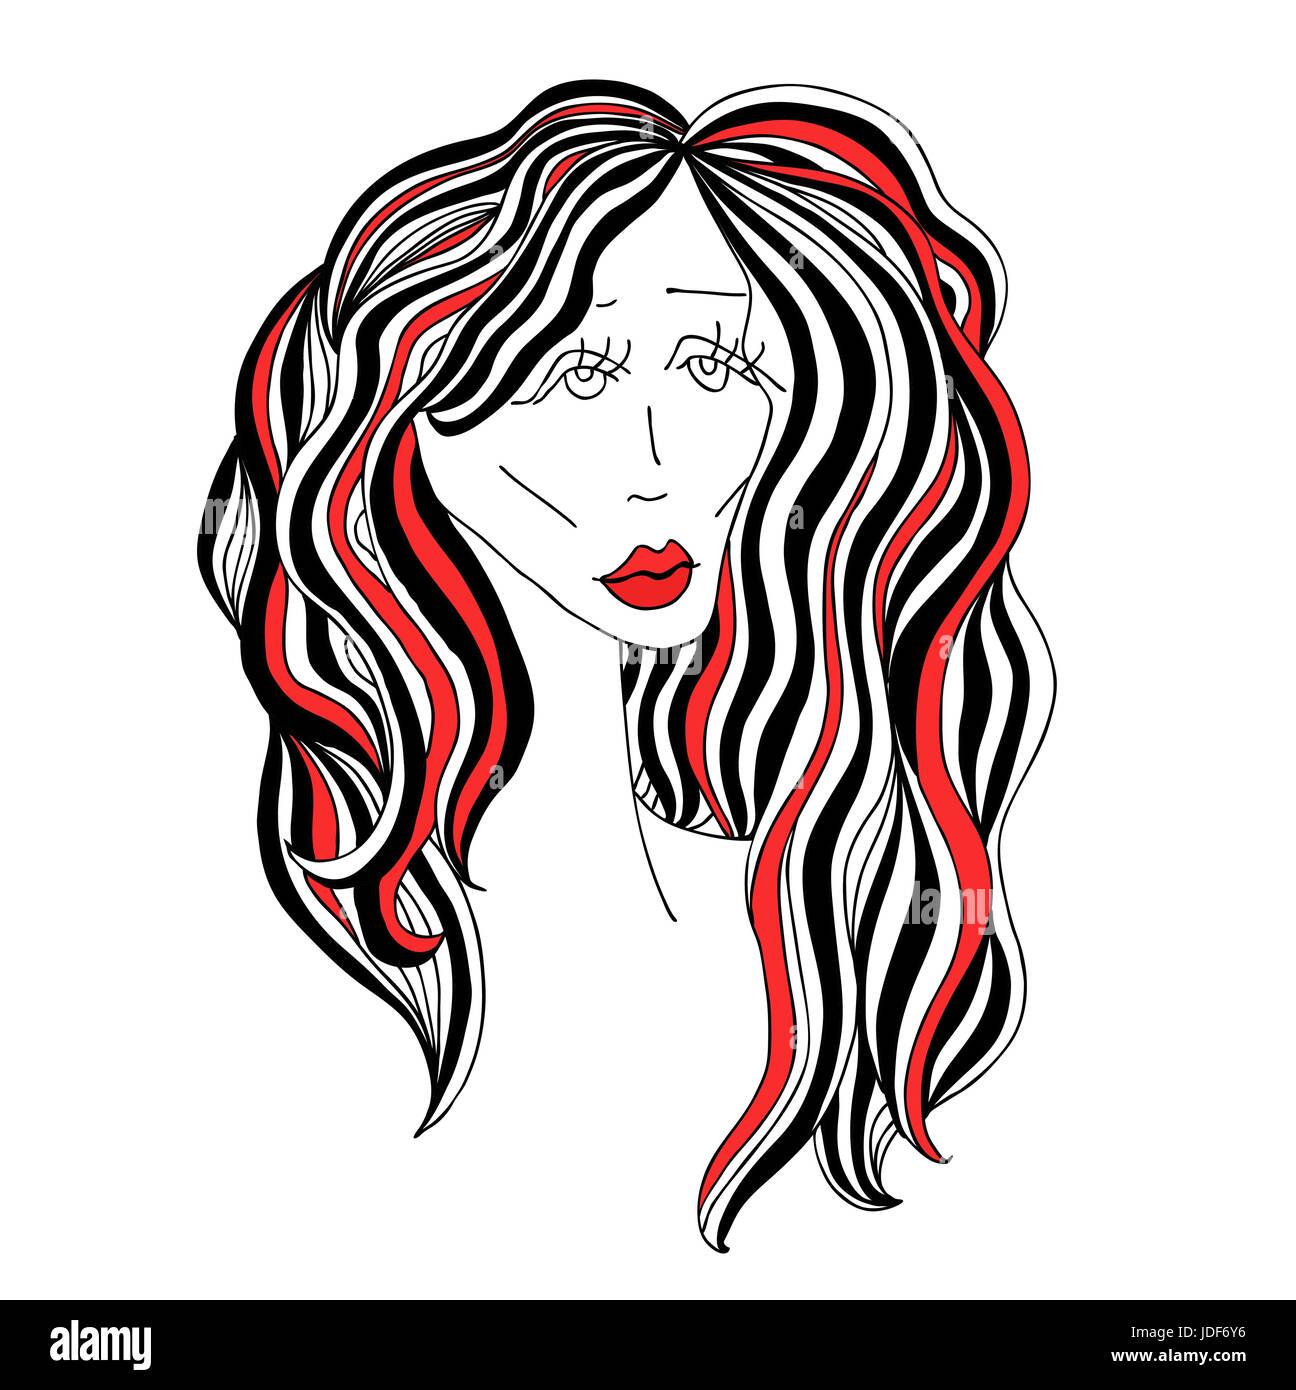 Traurige Frau mit schönen Haaren und roten Lippen. Digitale Skizze grafische schwarz-weiß-Stil. Vektor-Illustration. Stock Vektor